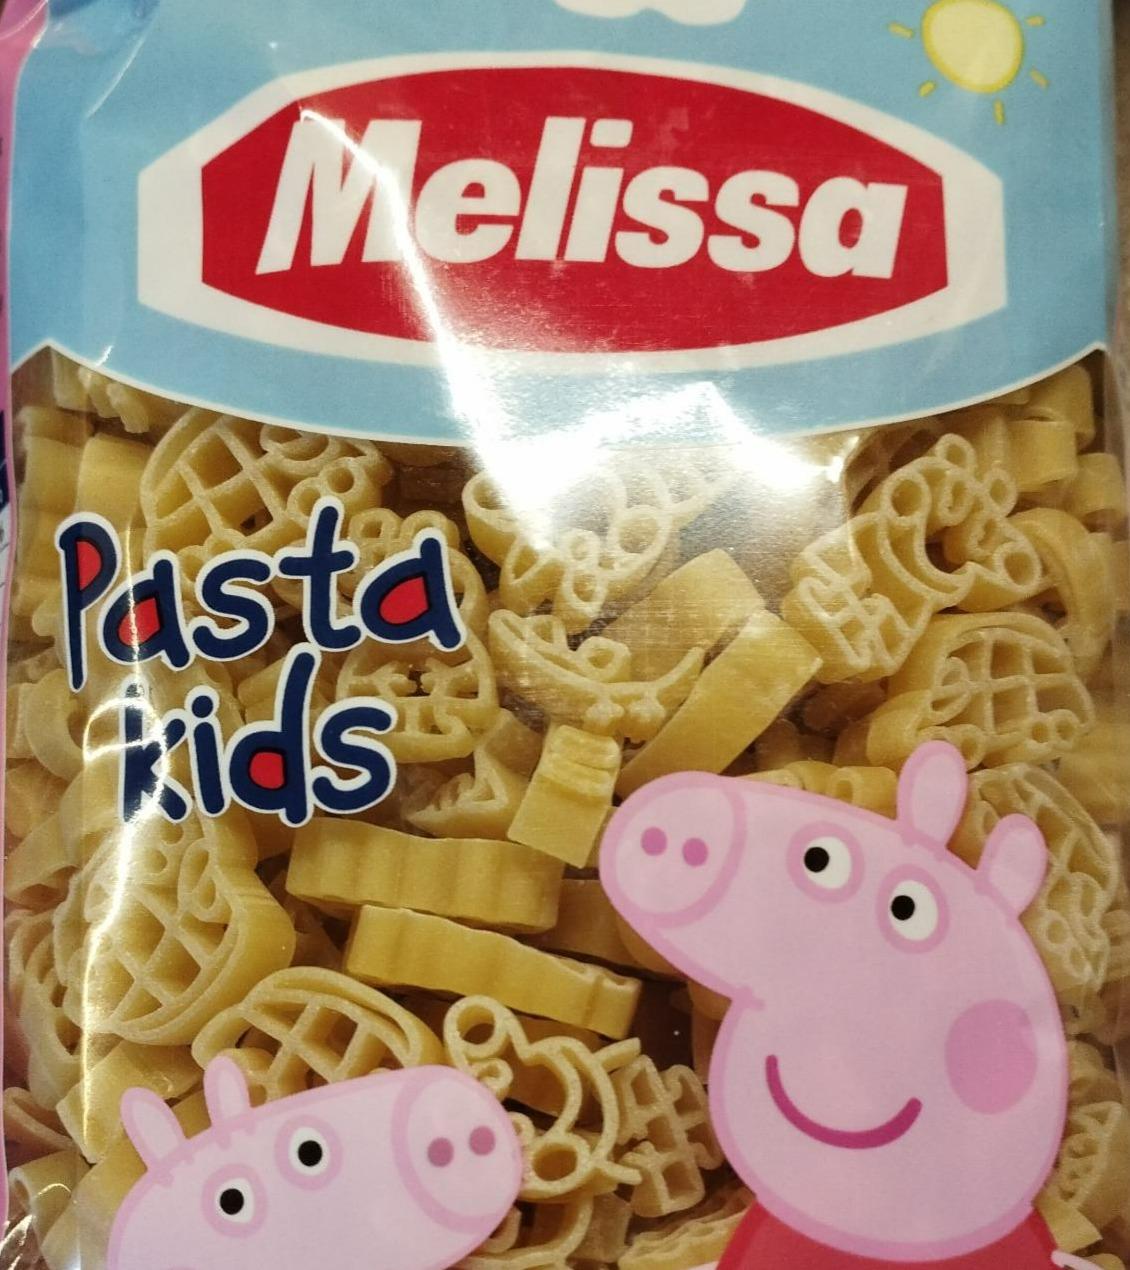 Fotografie - Pasta Kids Peppa Pig Melissa